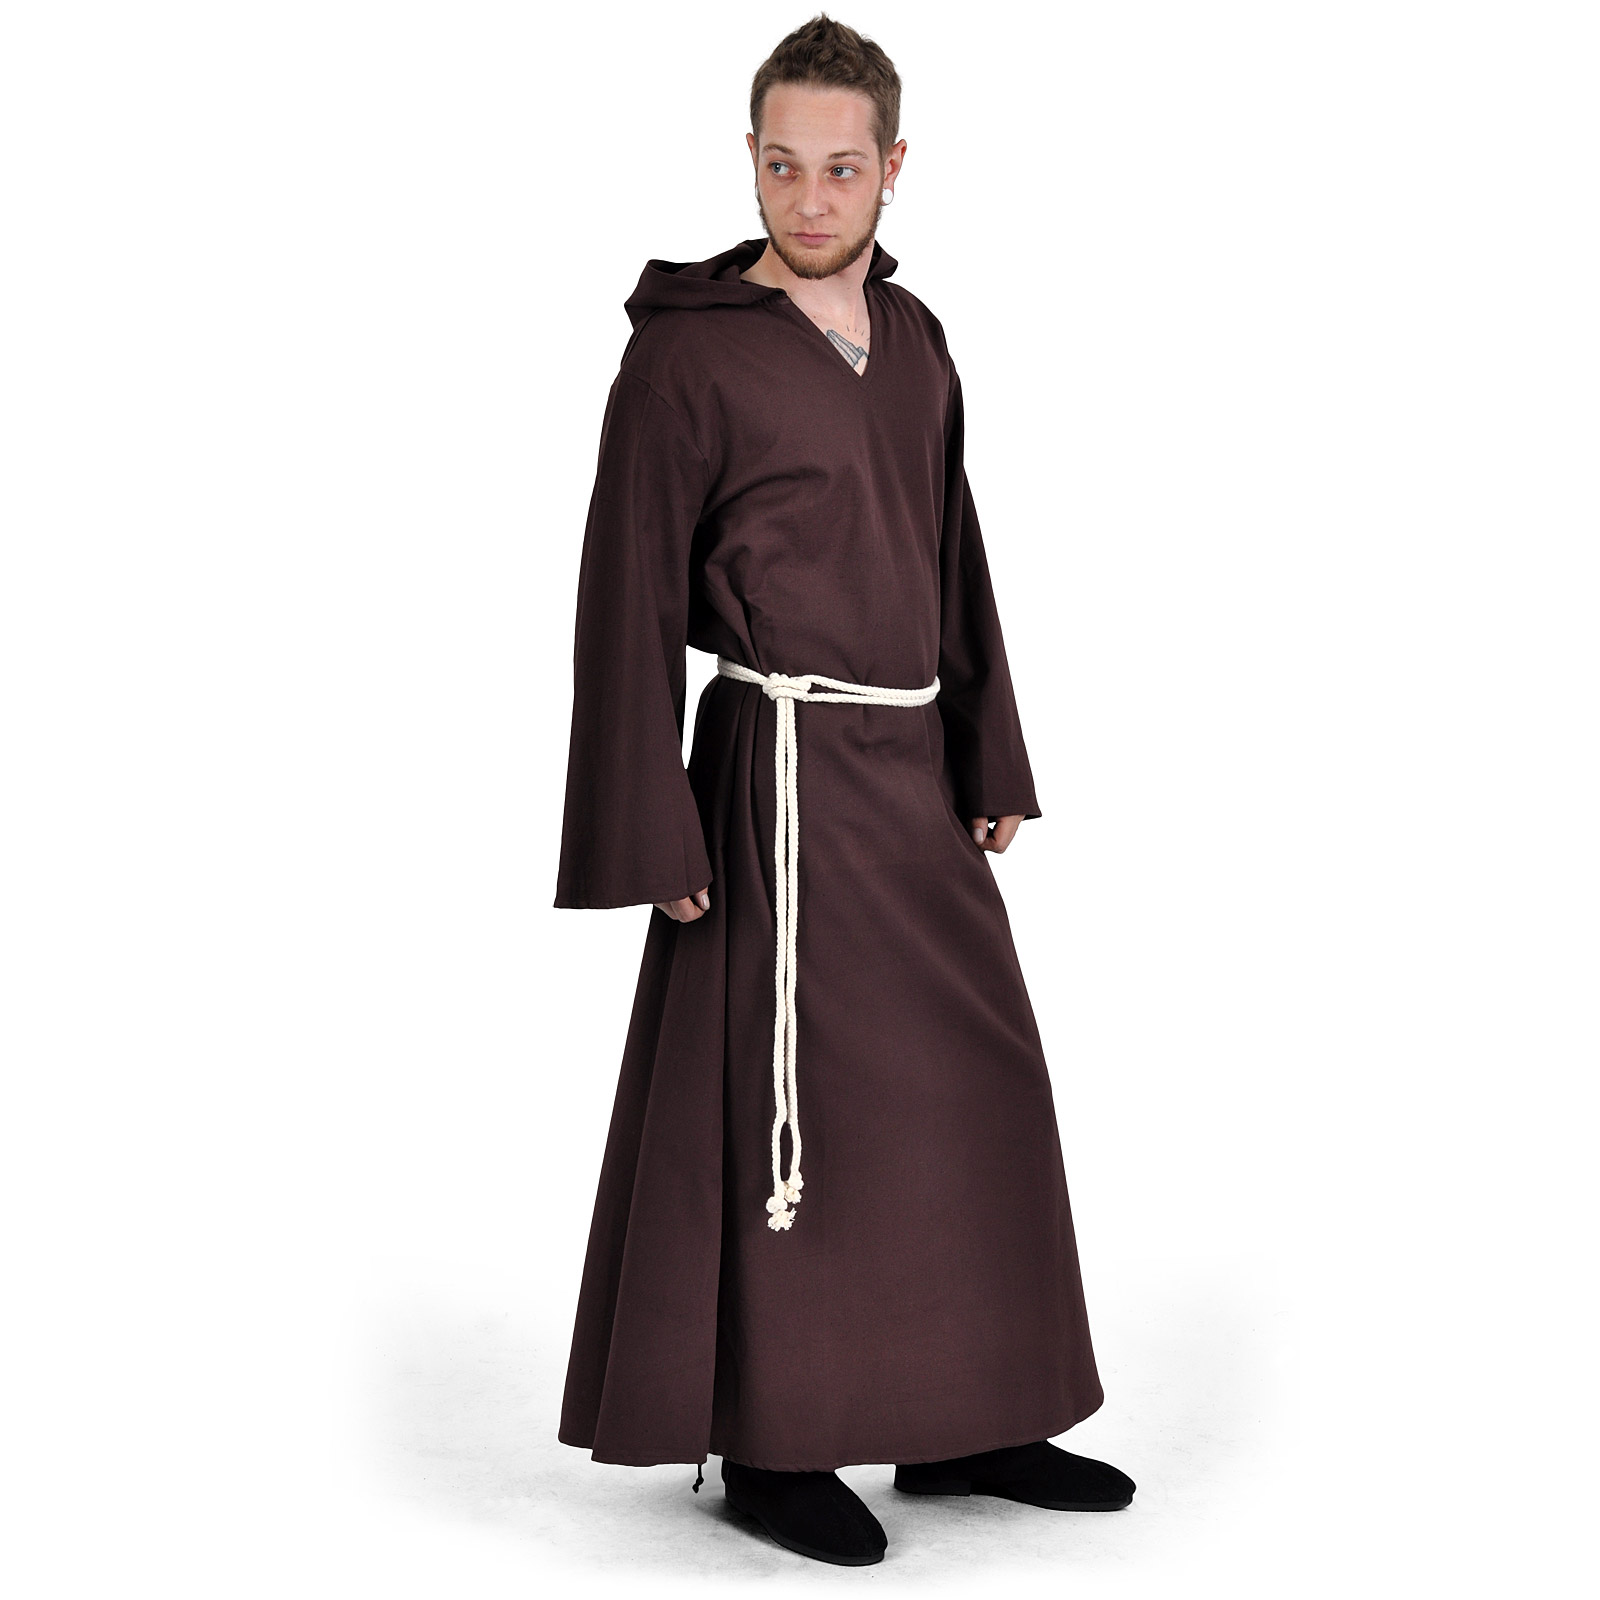 Robe de moine avec cordon marron